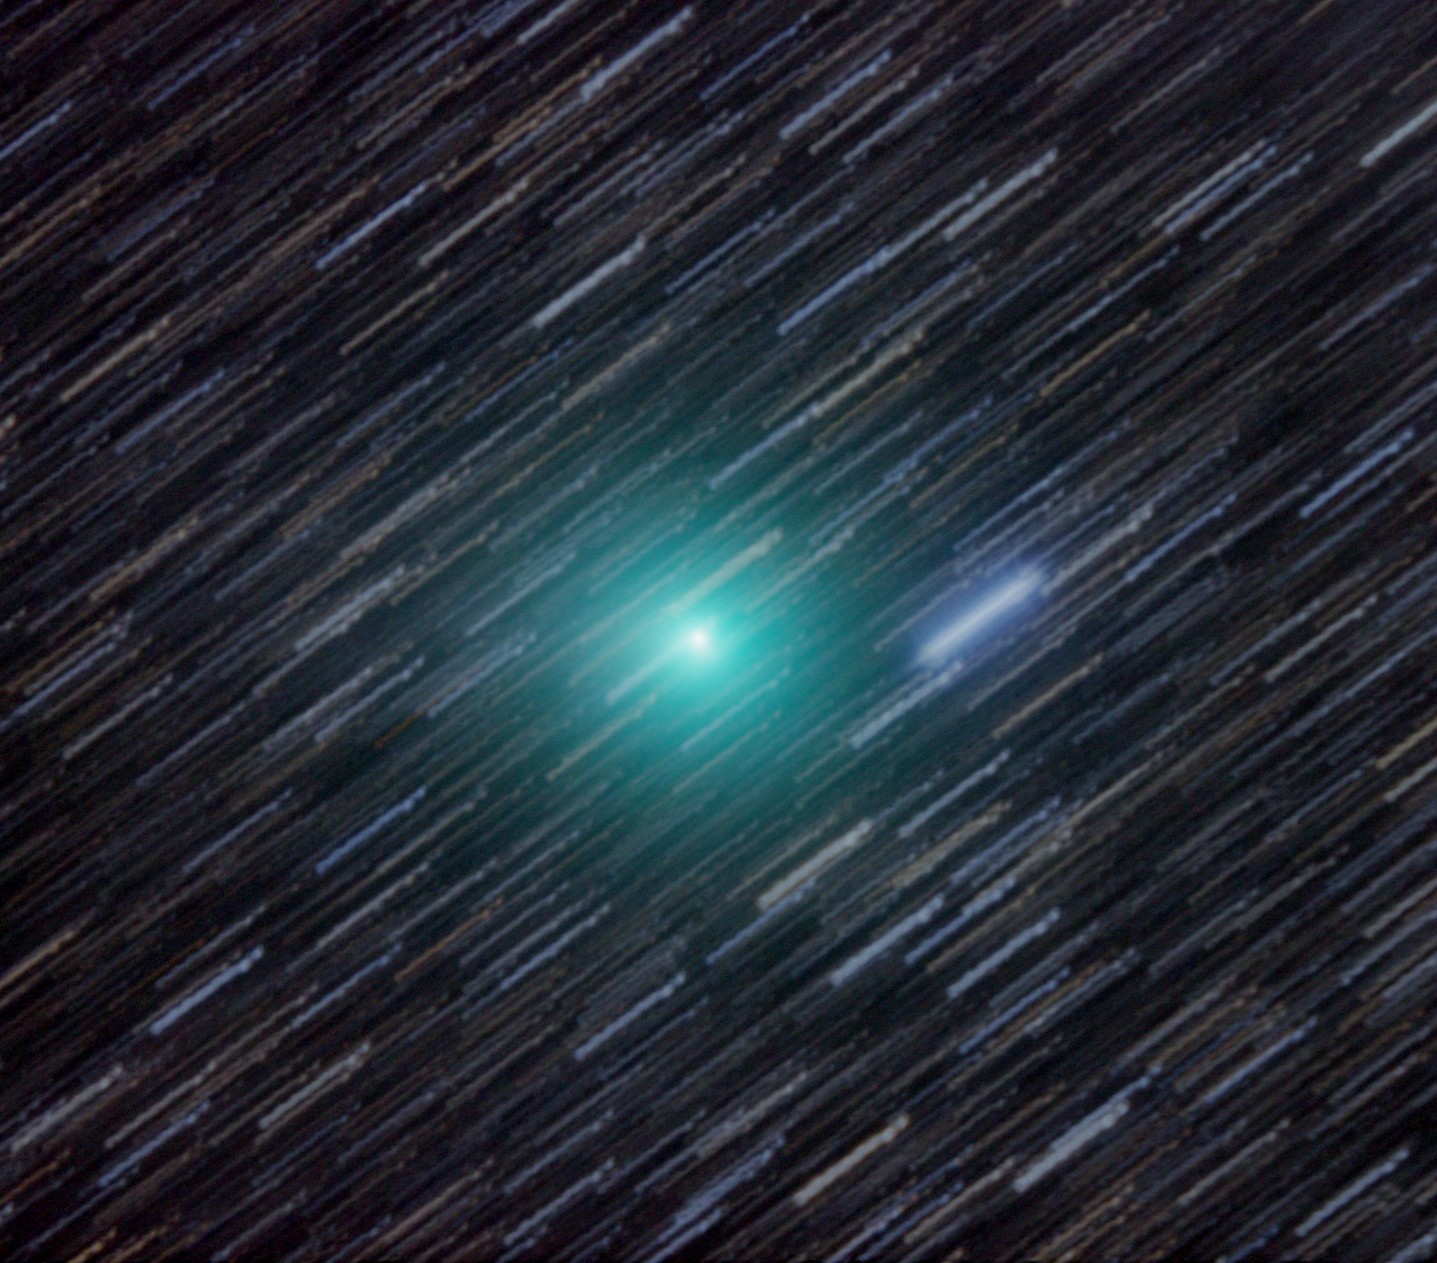 La comète Lemmon photographiée le 23 janvier dernier avec un télescope de 41 cm de diamètre installé en Nouvelle-Zélande. La couleur verte de la comète est produite par la fluorescence du cyanogène (C2N2) et du carbone diatomique (C2). Le télescope a suivi le déplacement de la comète (alors de magnitude 7) pendant les 20 minutes de pose, ce qui explique pourquoi les étoiles ont laissé des traits. © John Drummond